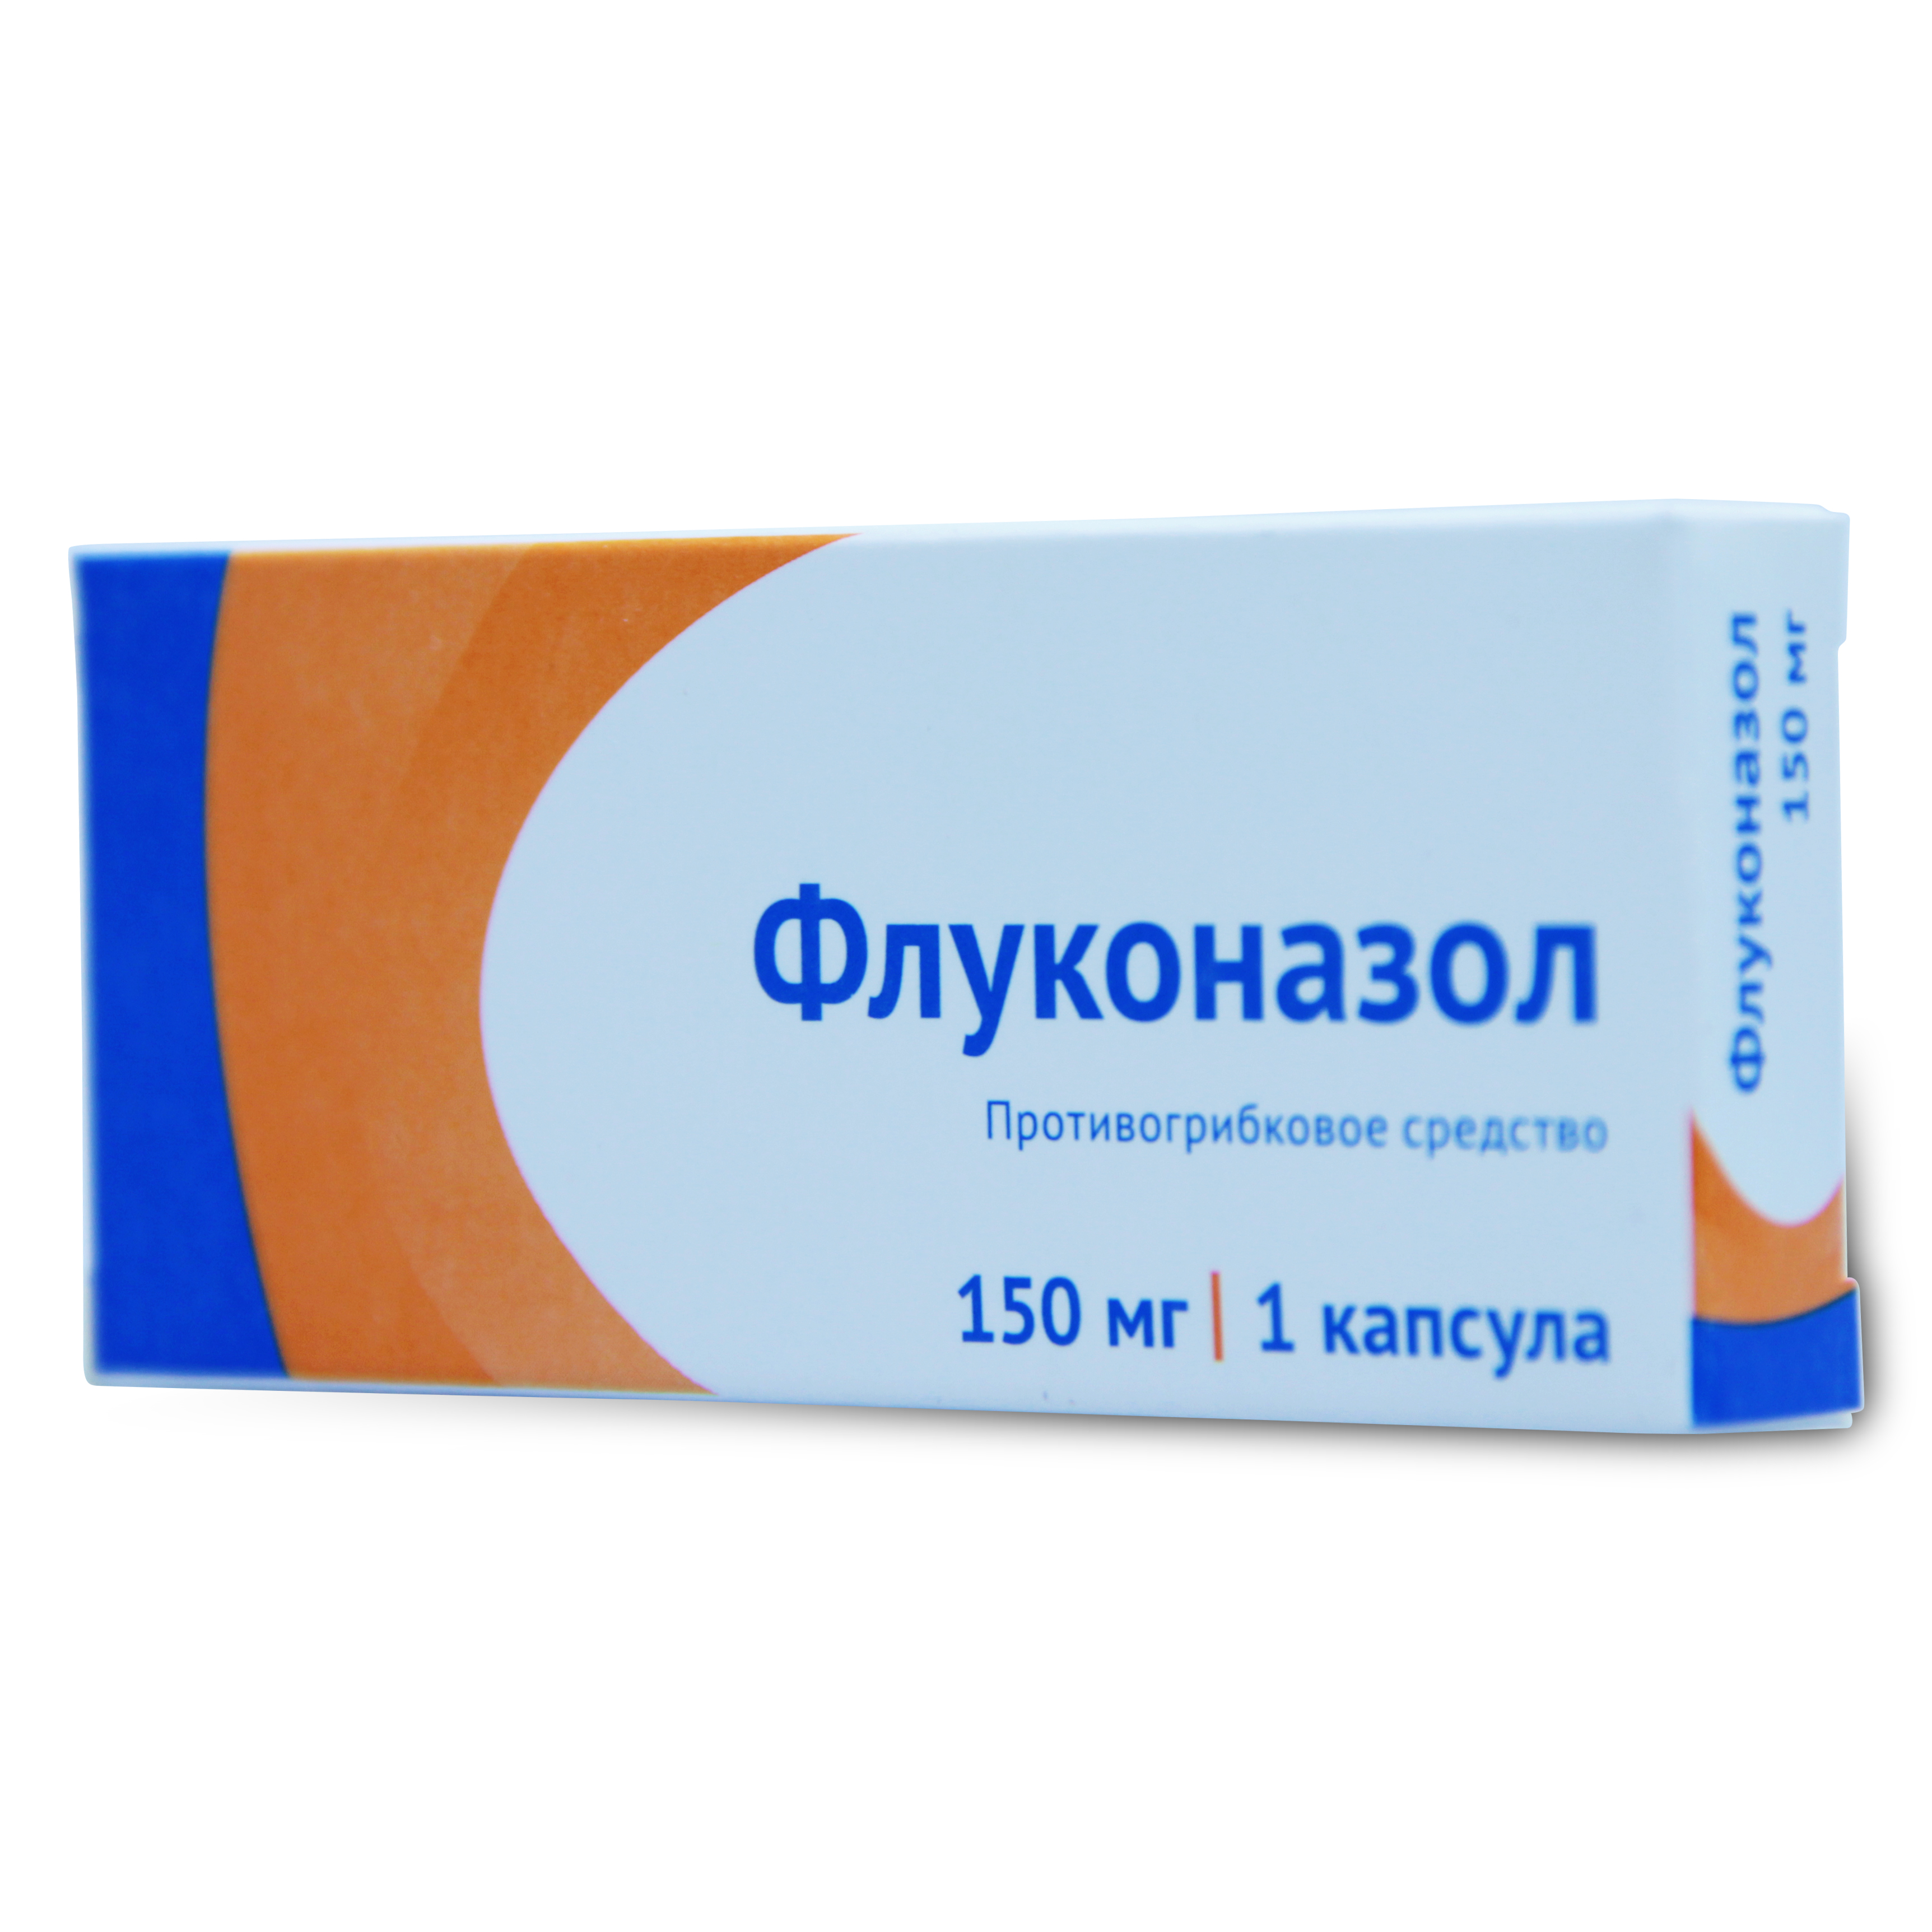 Купить Флуконазол капсулы 150 мг 1 шт., Озон ООО